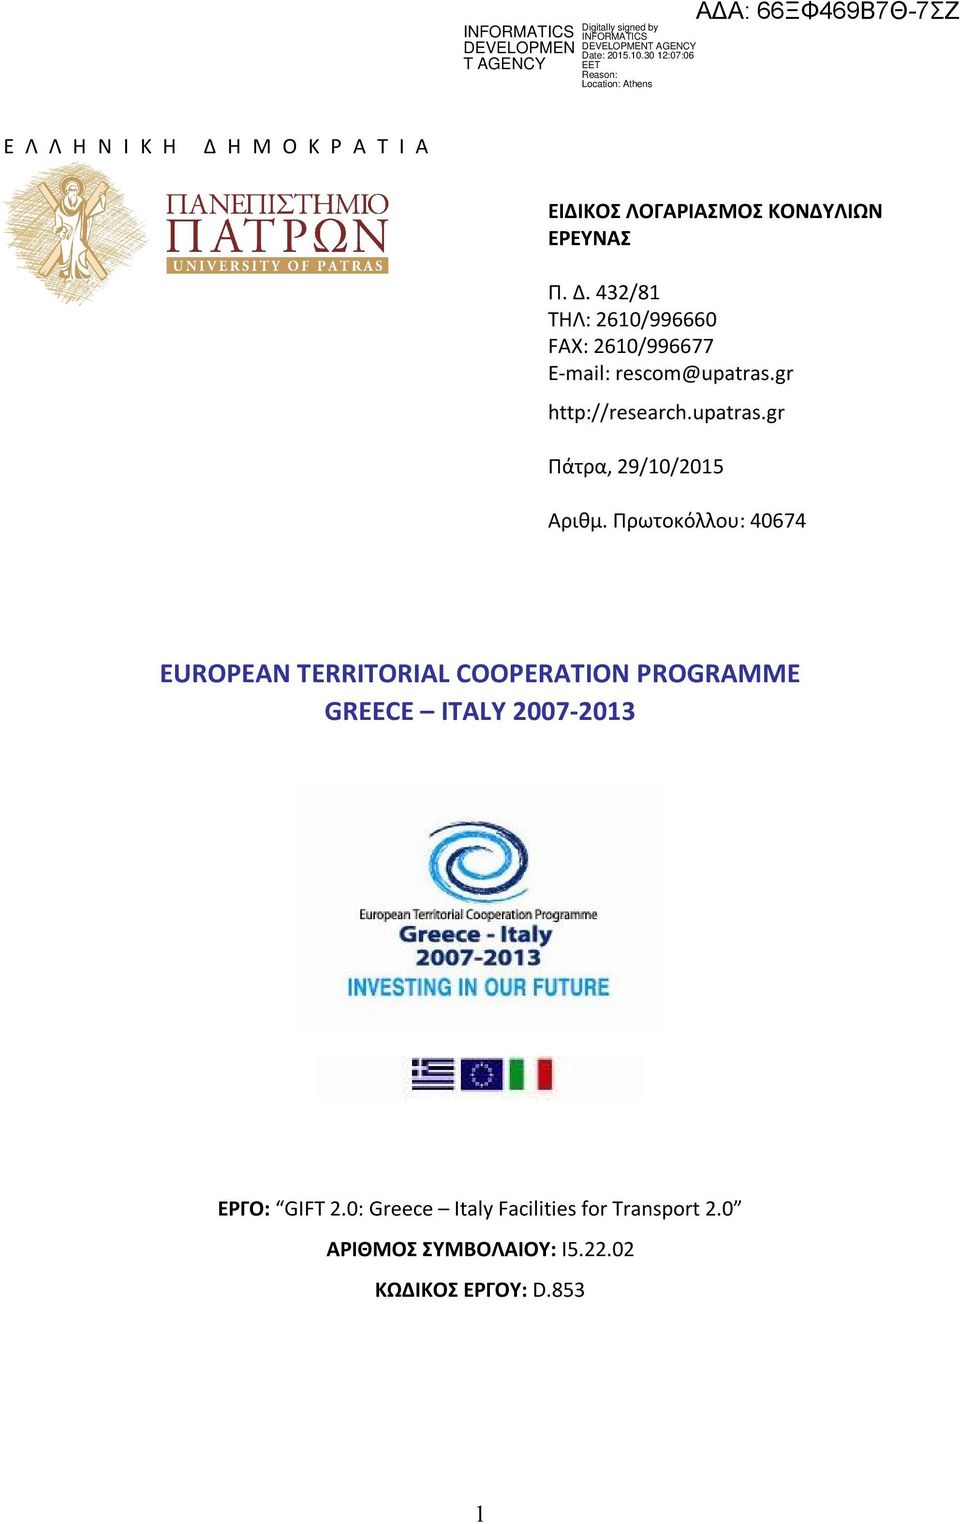 Πρωτοκόλλου: 40674 EUROPEAN TERRITORIAL COOPERATION PROGRAMME GREECE ITALY 2007-2013 ΕΡΓΟ: GIFT 2.